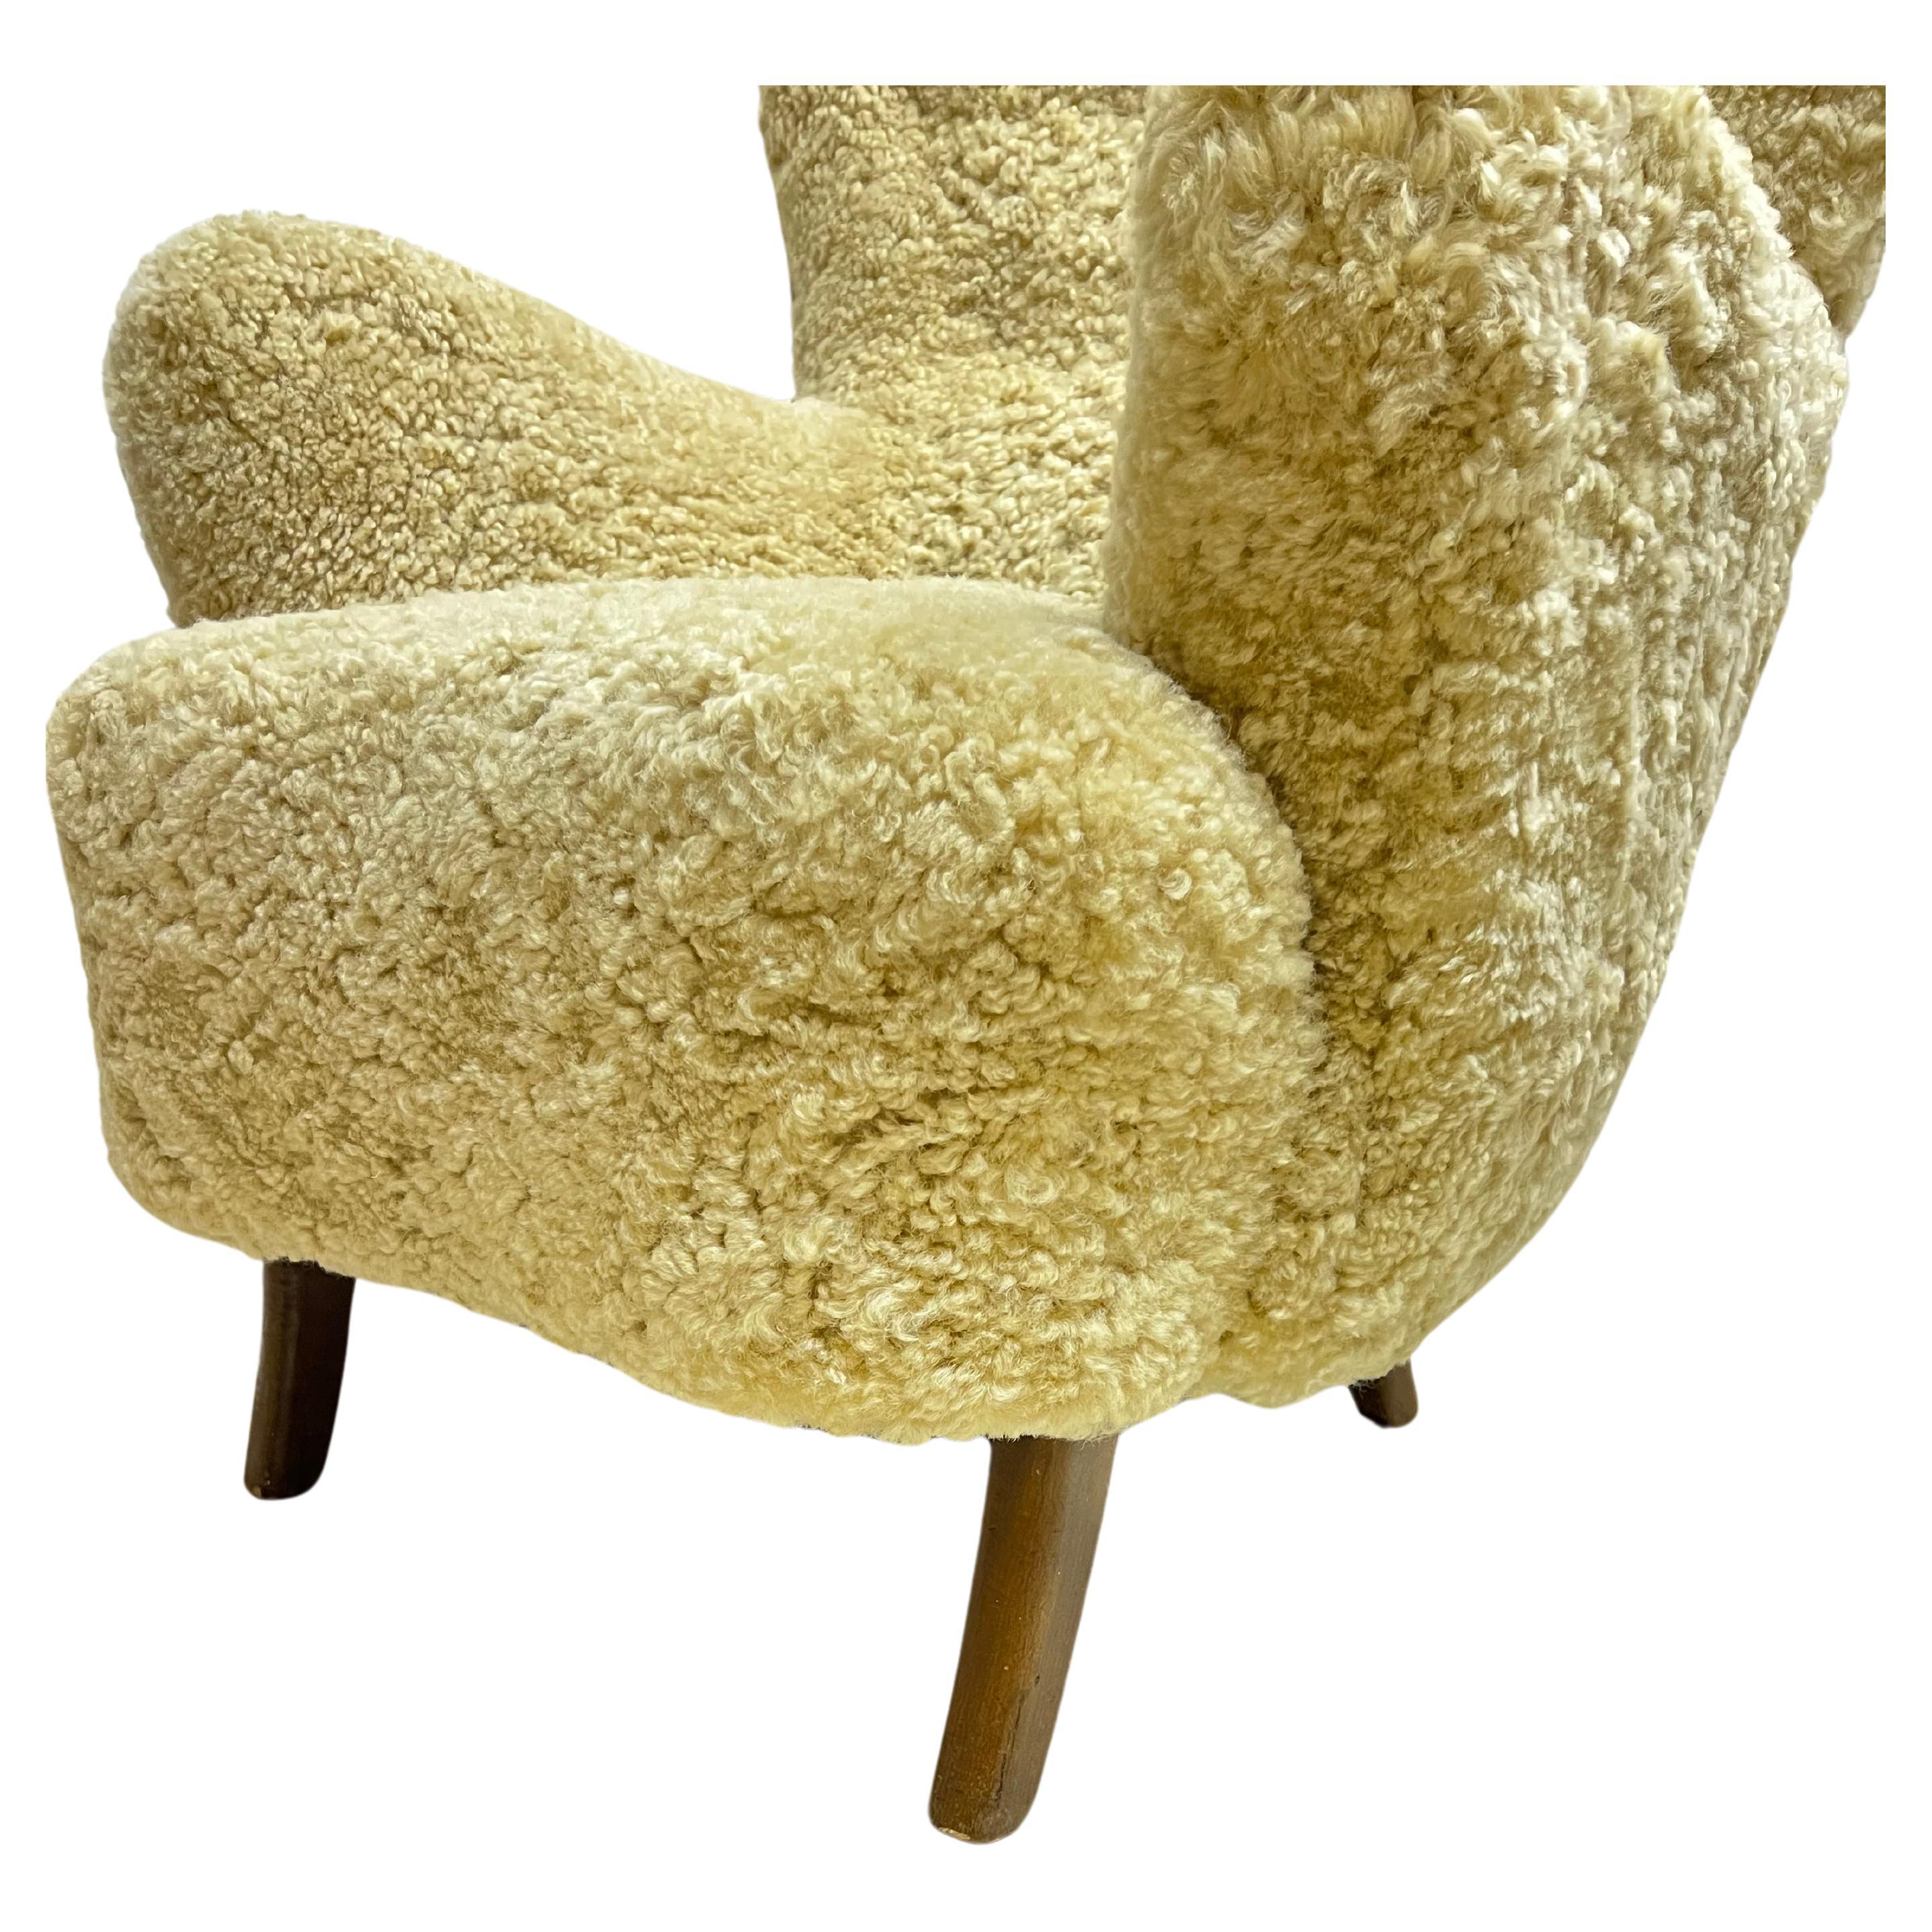 Paire de chaises longues à haut dossier du designer danois Alfred Christensen, récemment recouvertes de peau de mouton couleur miel naturel, avec accoudoirs incurvés. Vers les années 1950.

À propos du designer : En 1936, Christensen rejoint Knoll